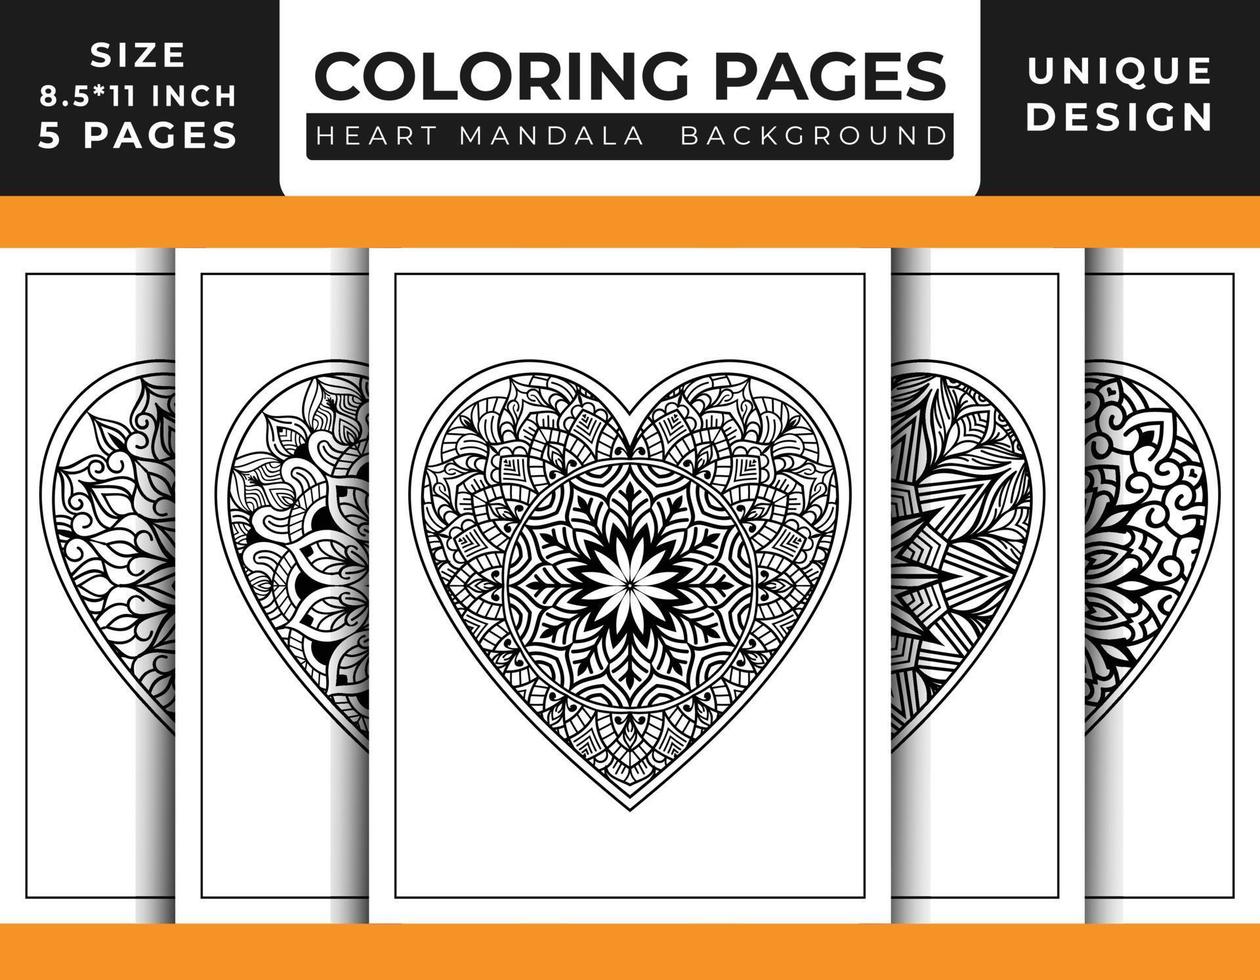 pages de coloriage d'art de motif de mandala floral en forme de coeur pour adultes, dessins au trait dessinés à la main, pages de coloriage de mandala floral de coeur de griffonnage vecteur